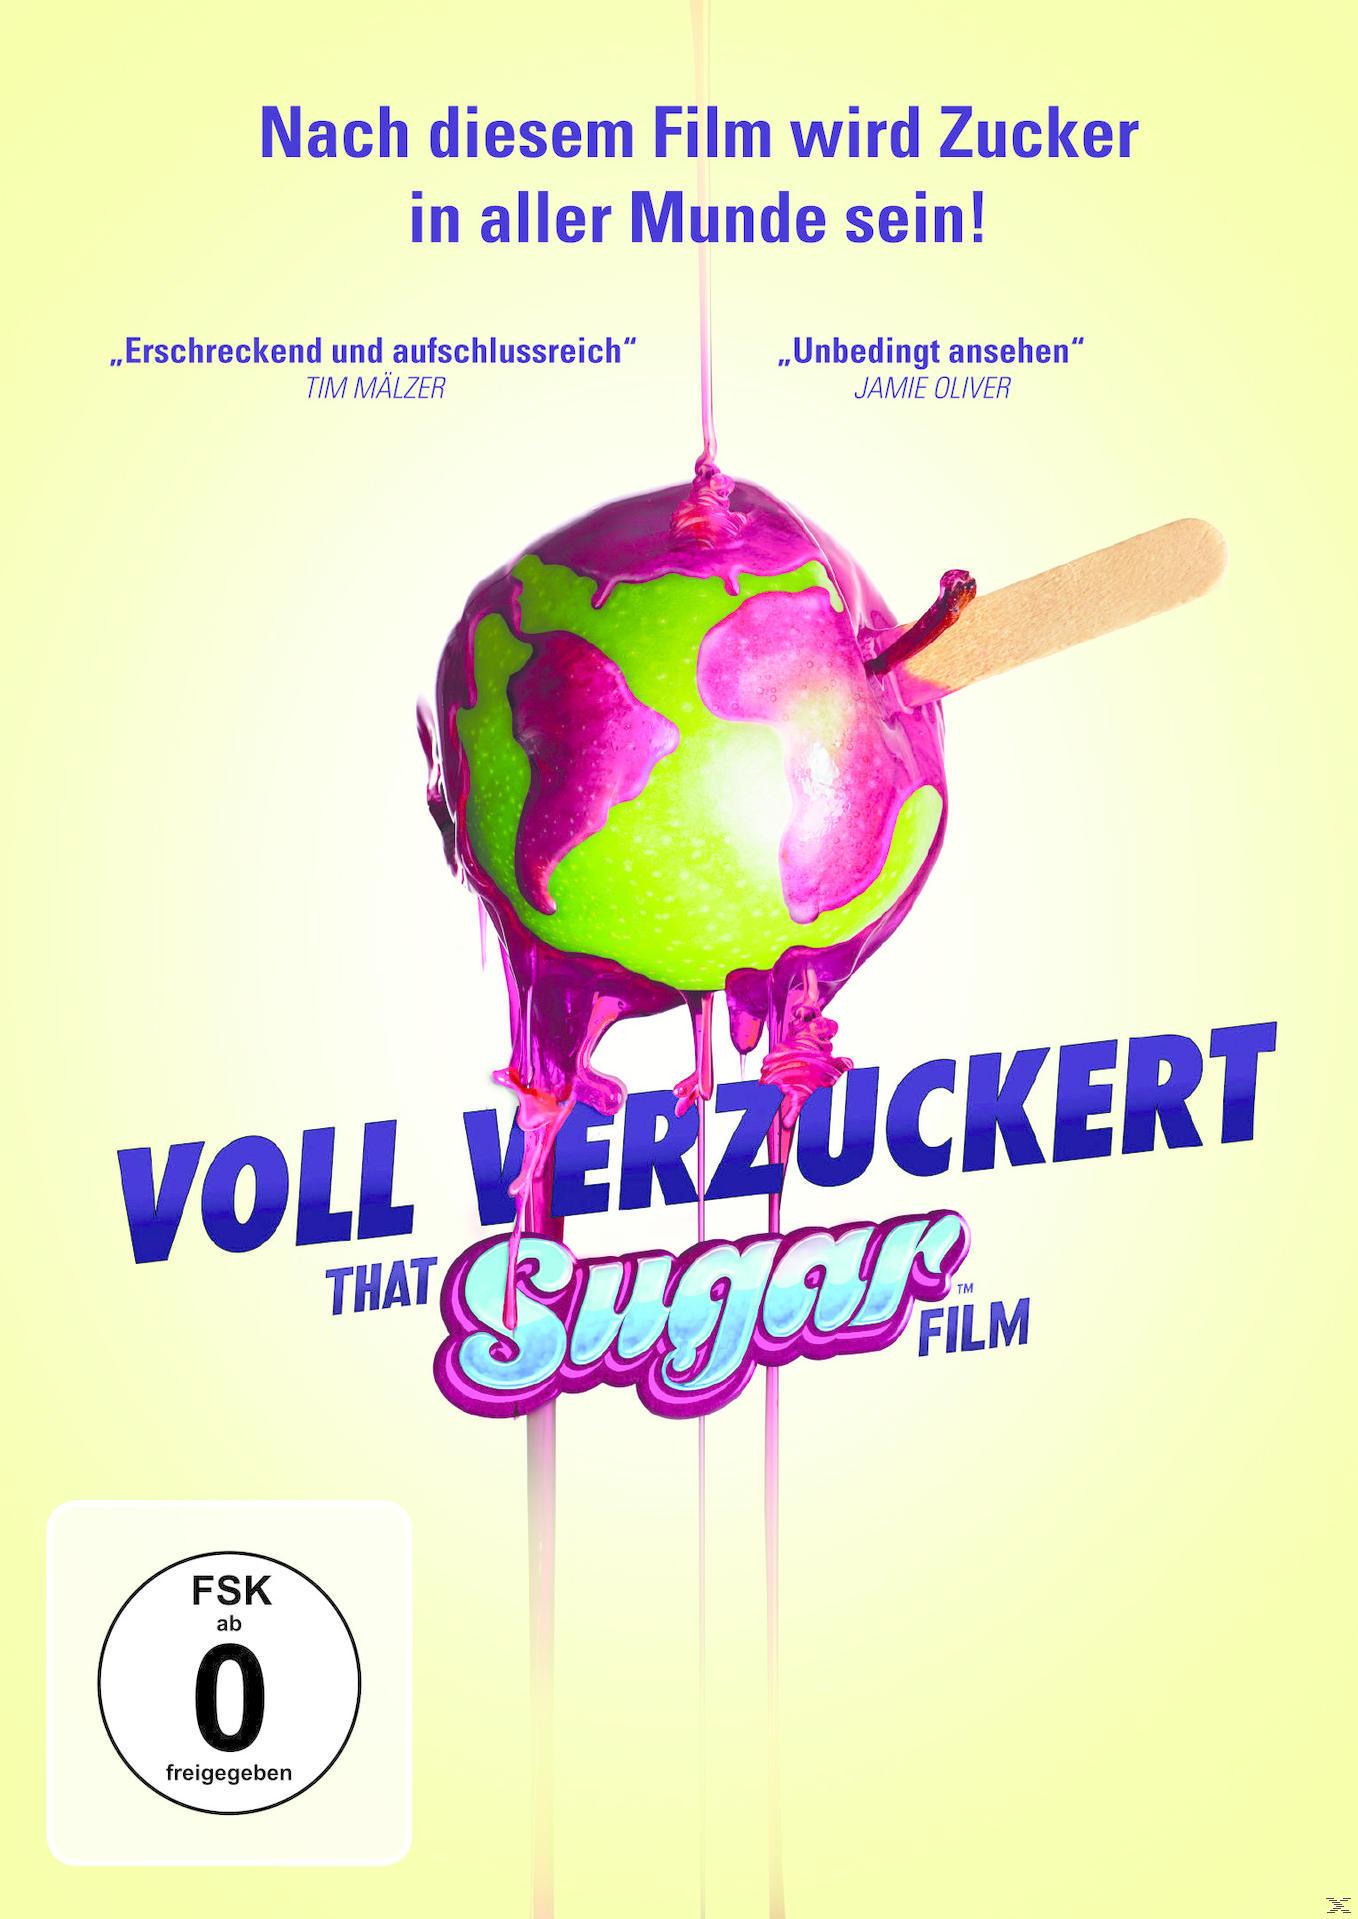 Voll verzuckert - That Sugar DVD Film